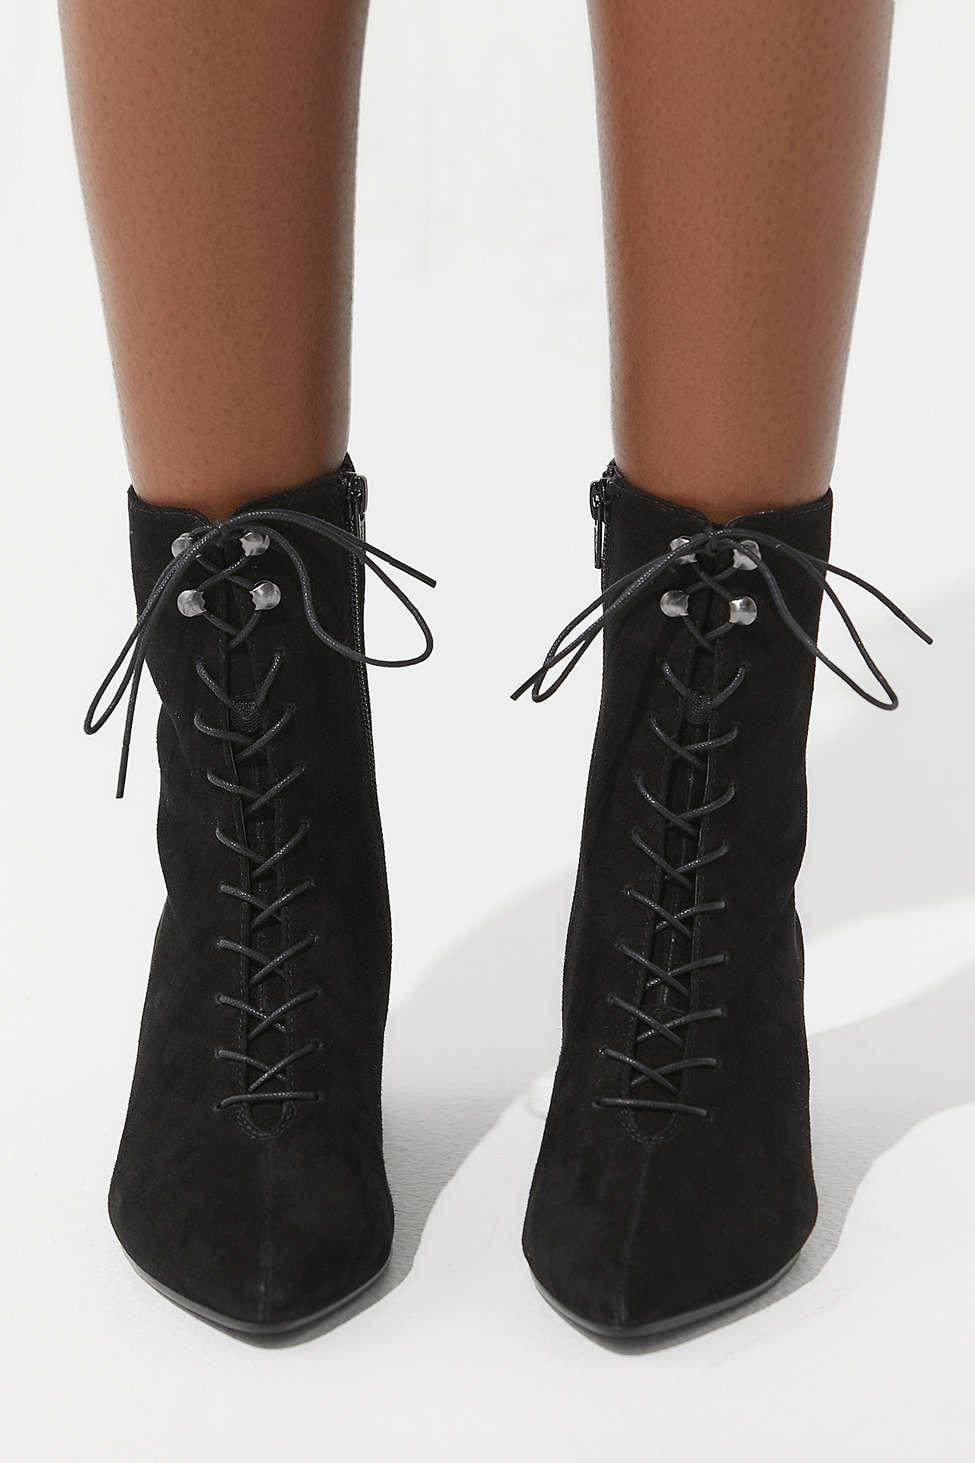 vagabond boots lace up